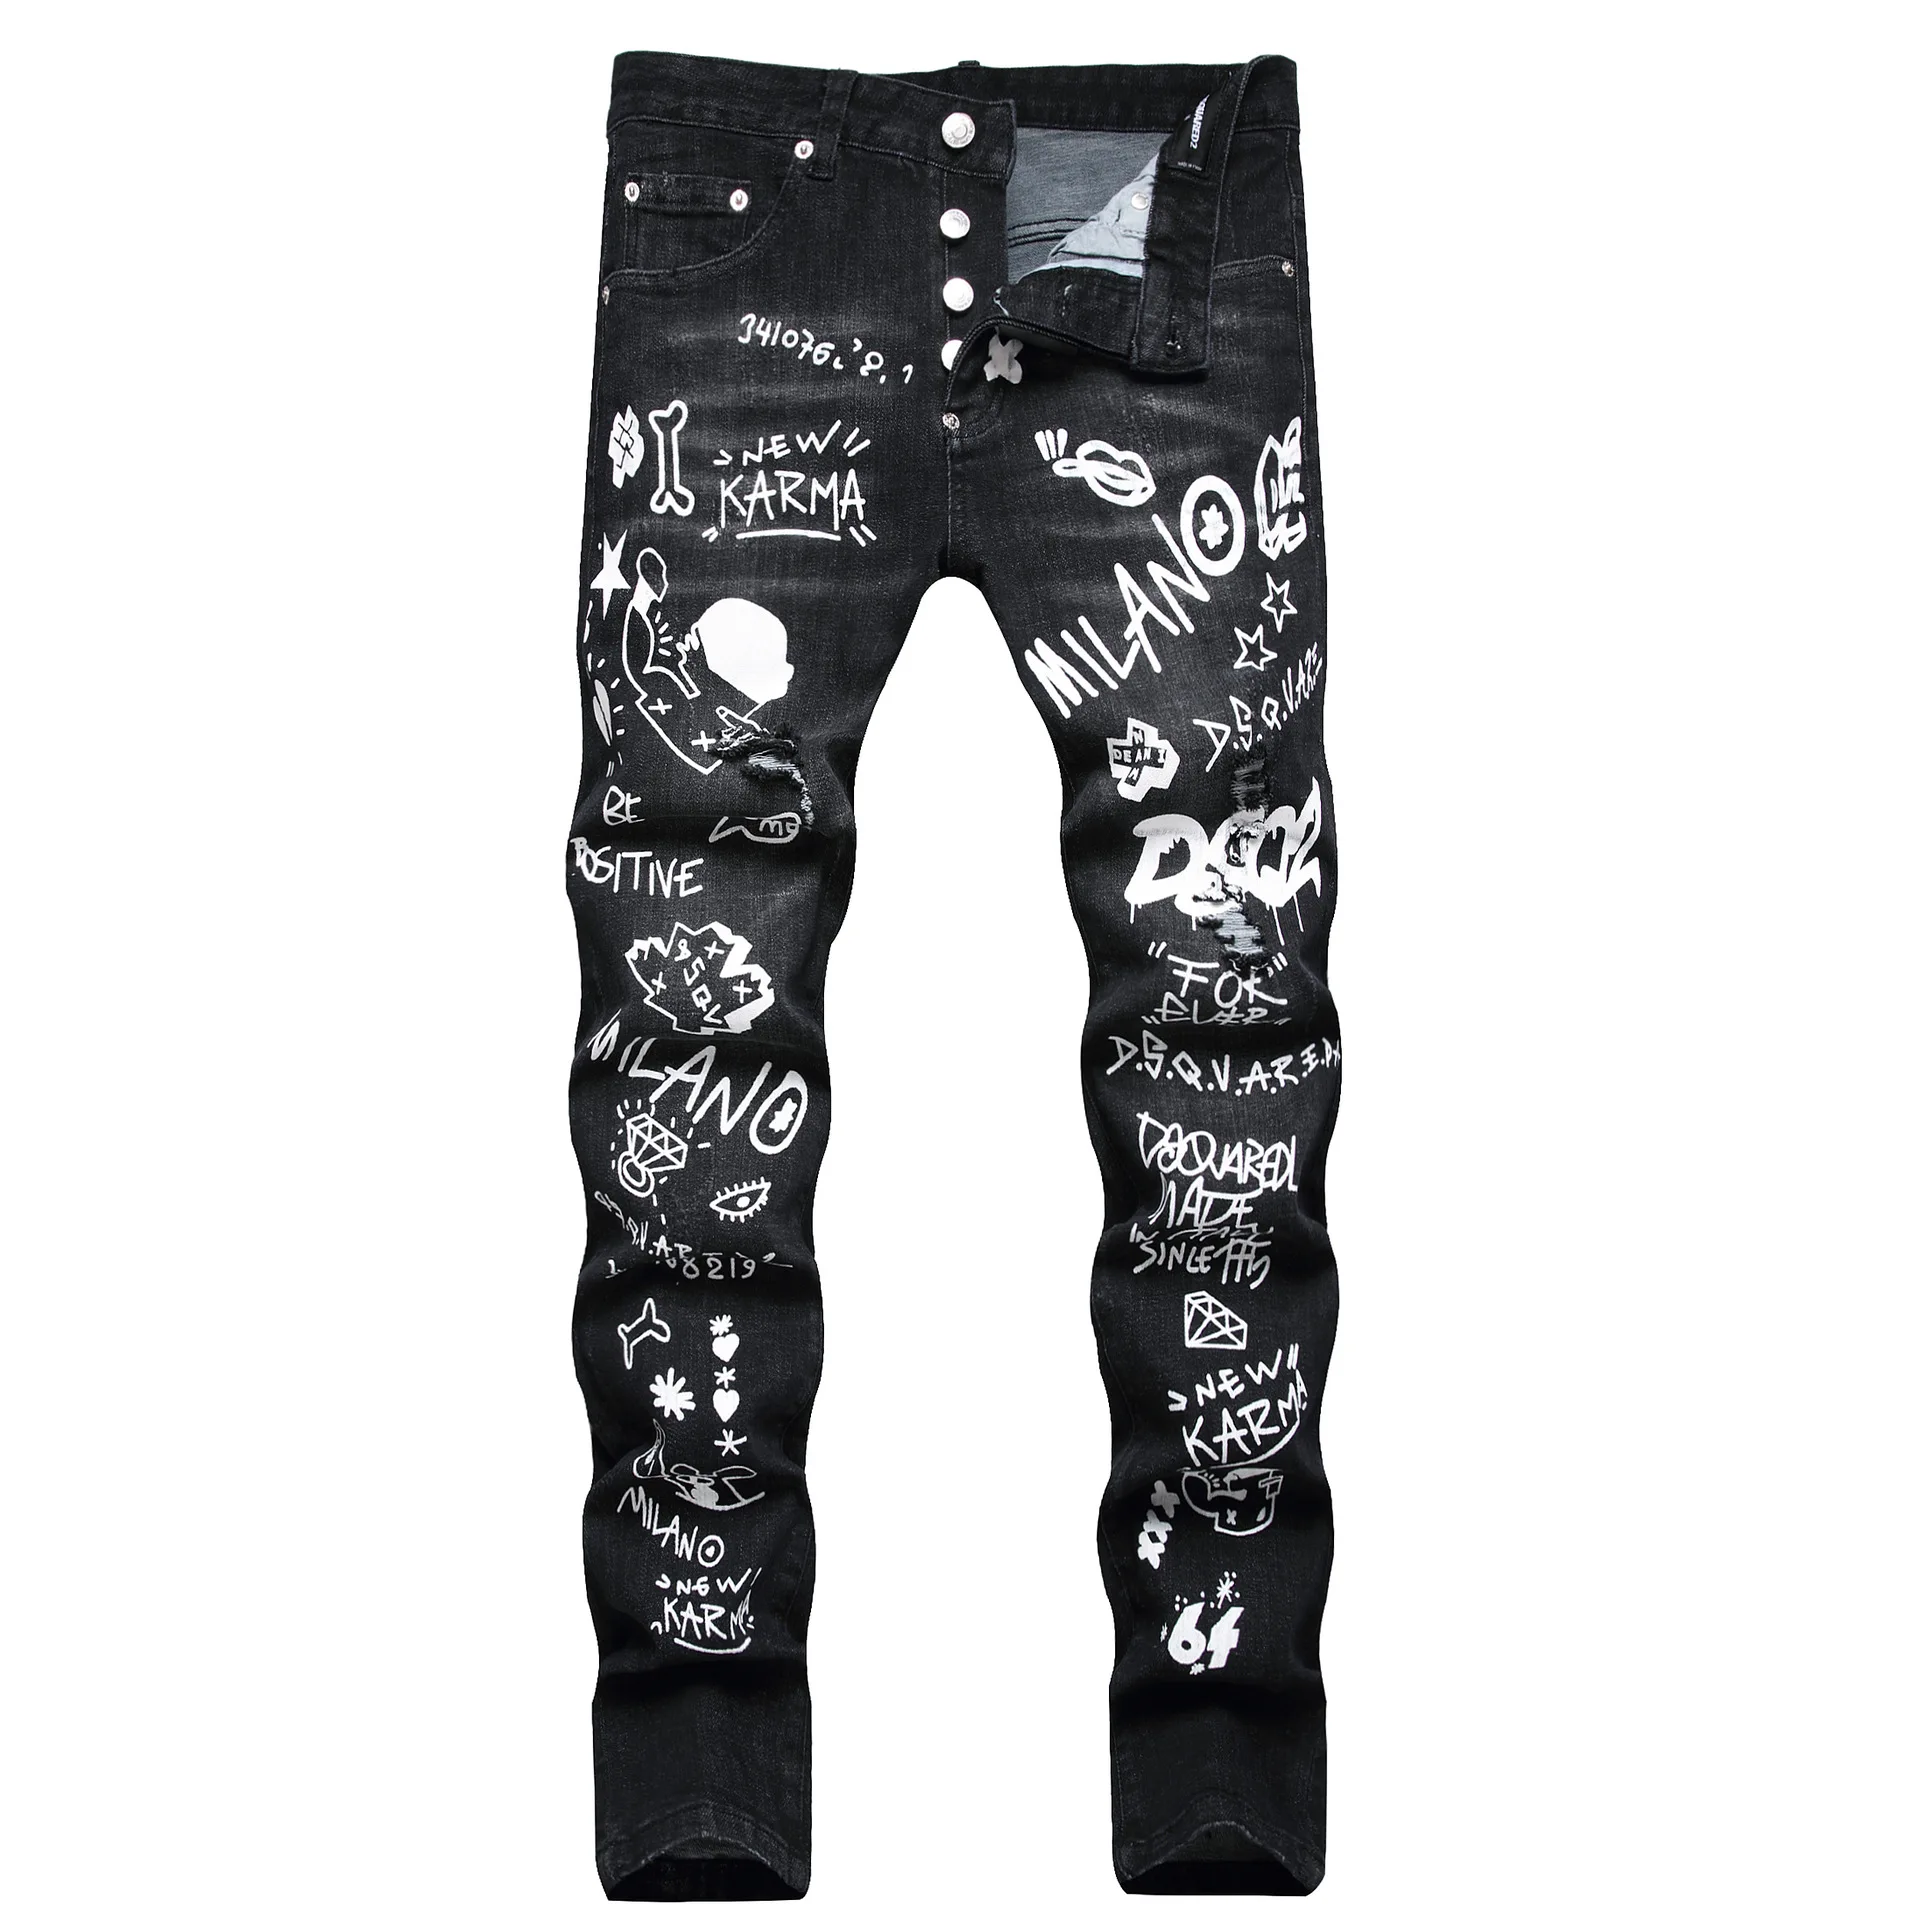 DSQUARED2 marka erkek kot moda rahat ince D2 grafiti baskılı streç kot pantolon sokak Hip Hop siyah kot pantolon